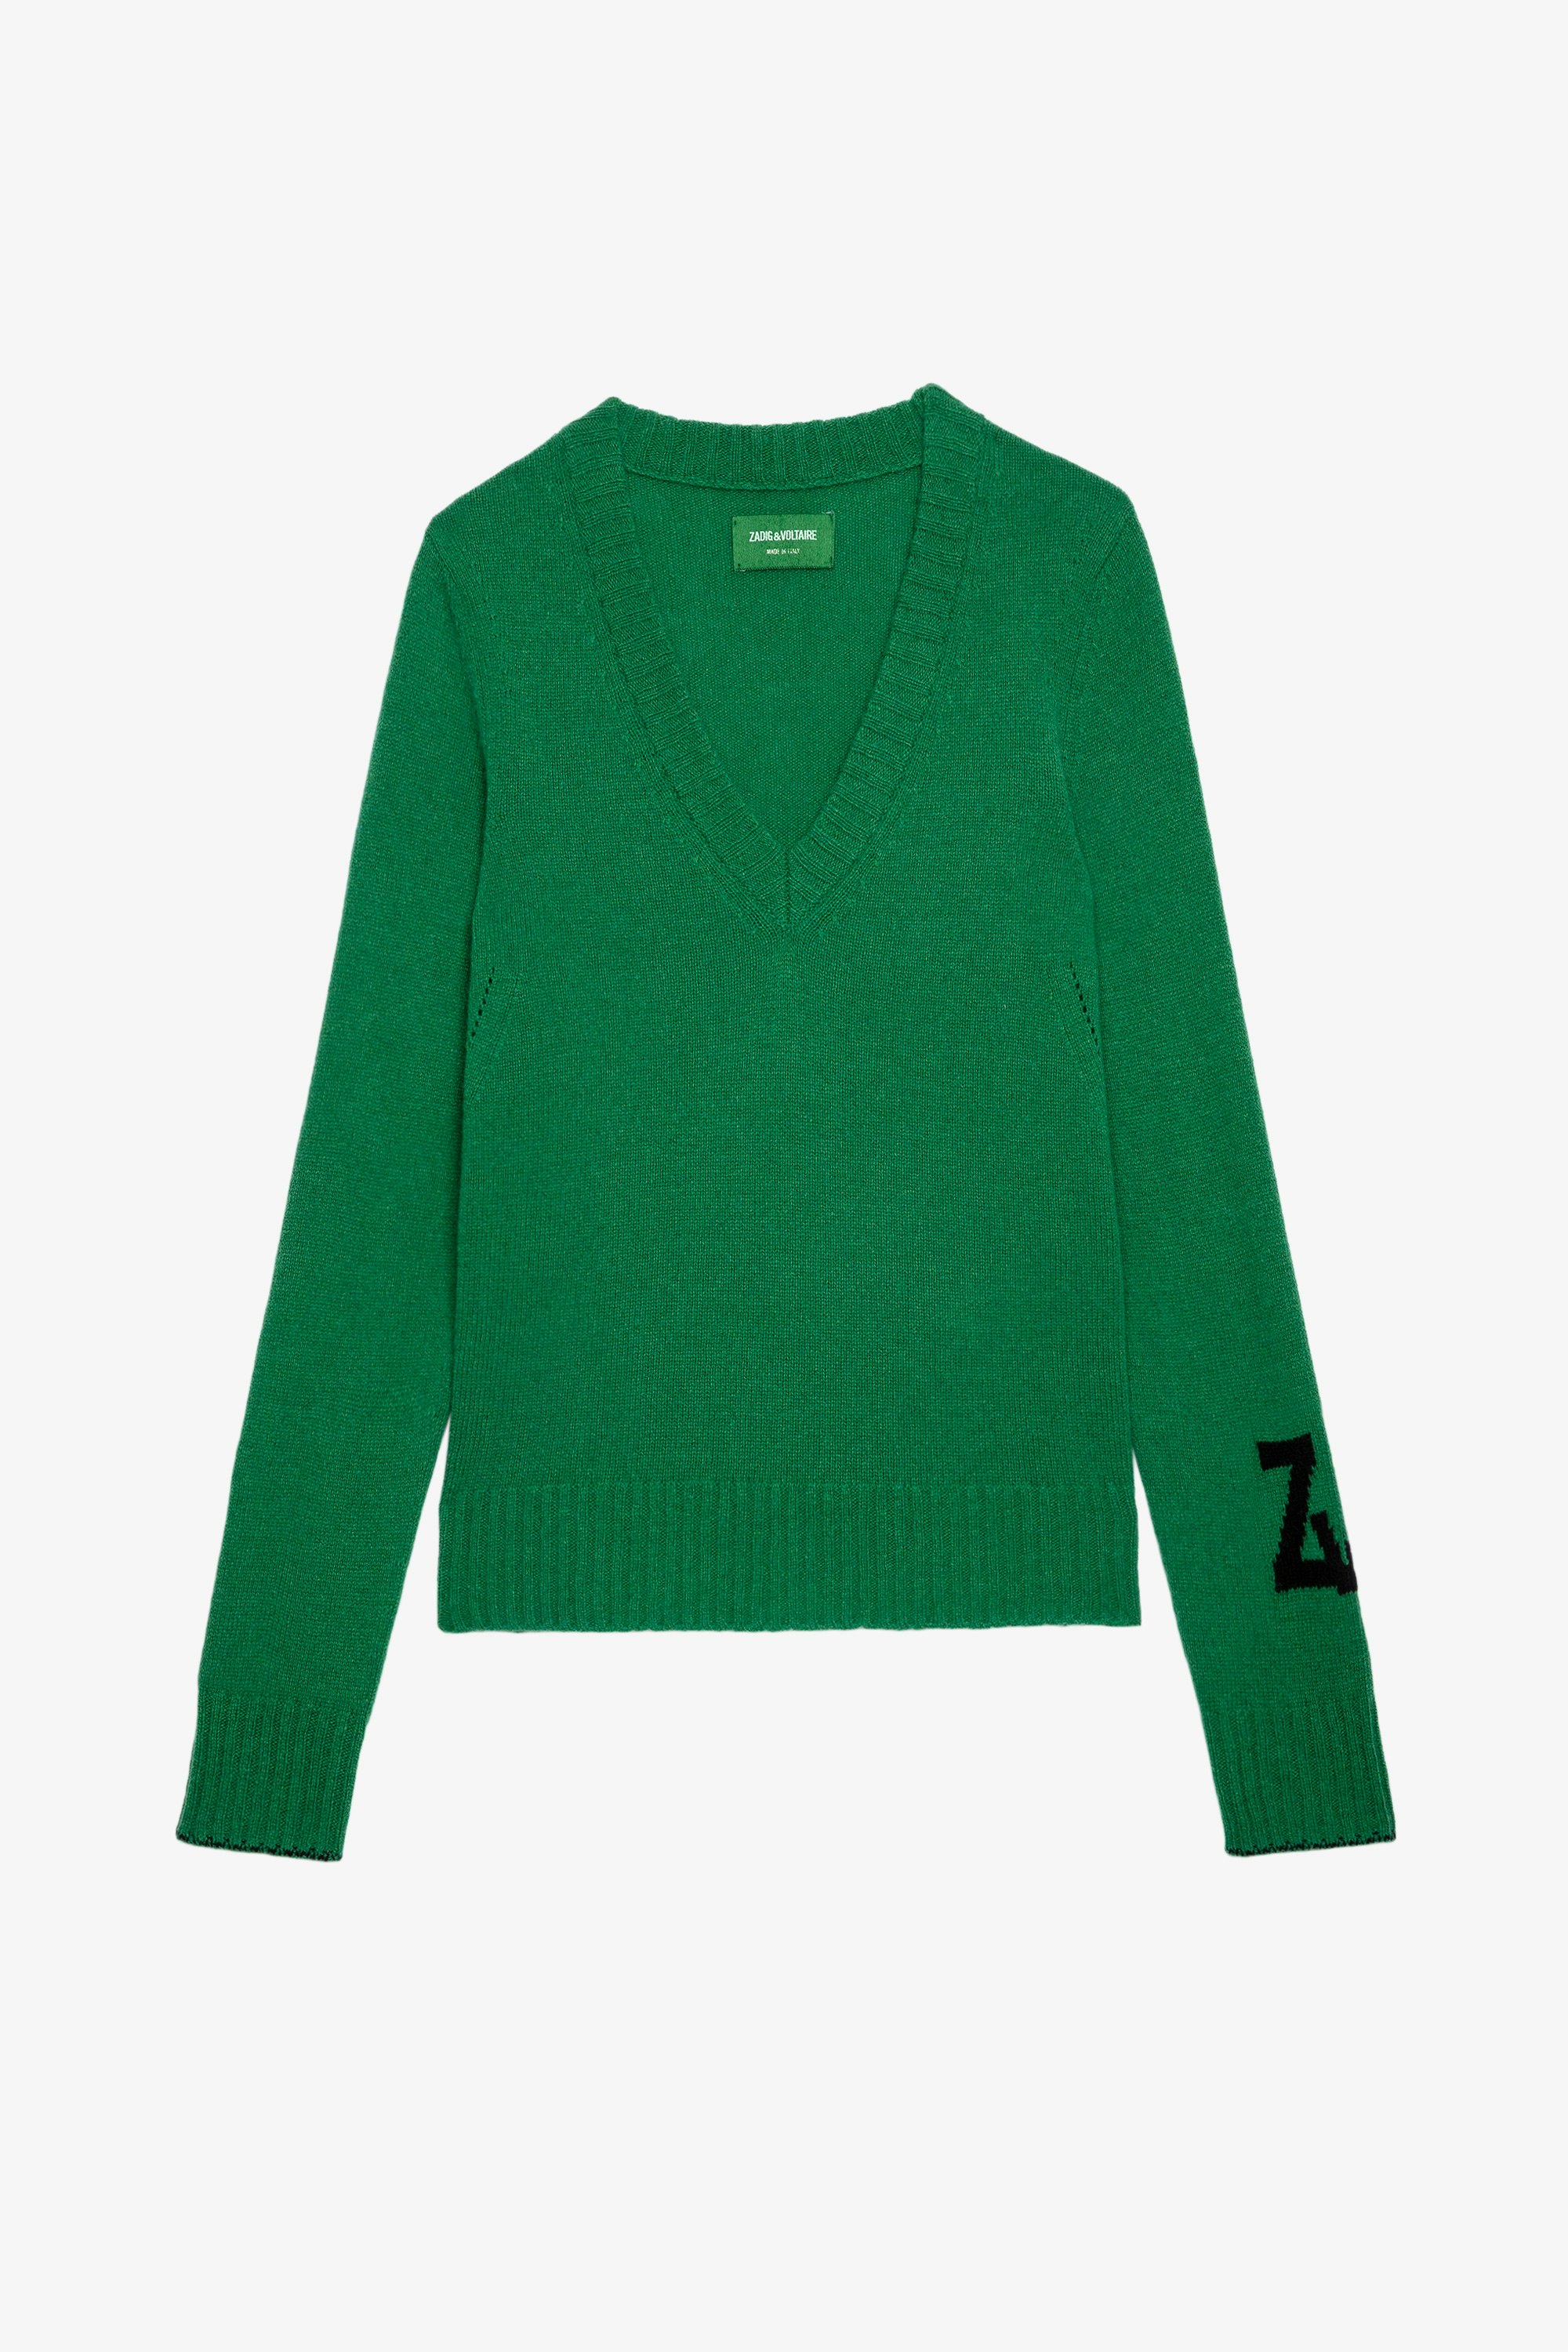 Sourca ニット Women's V-neck green knit jumper